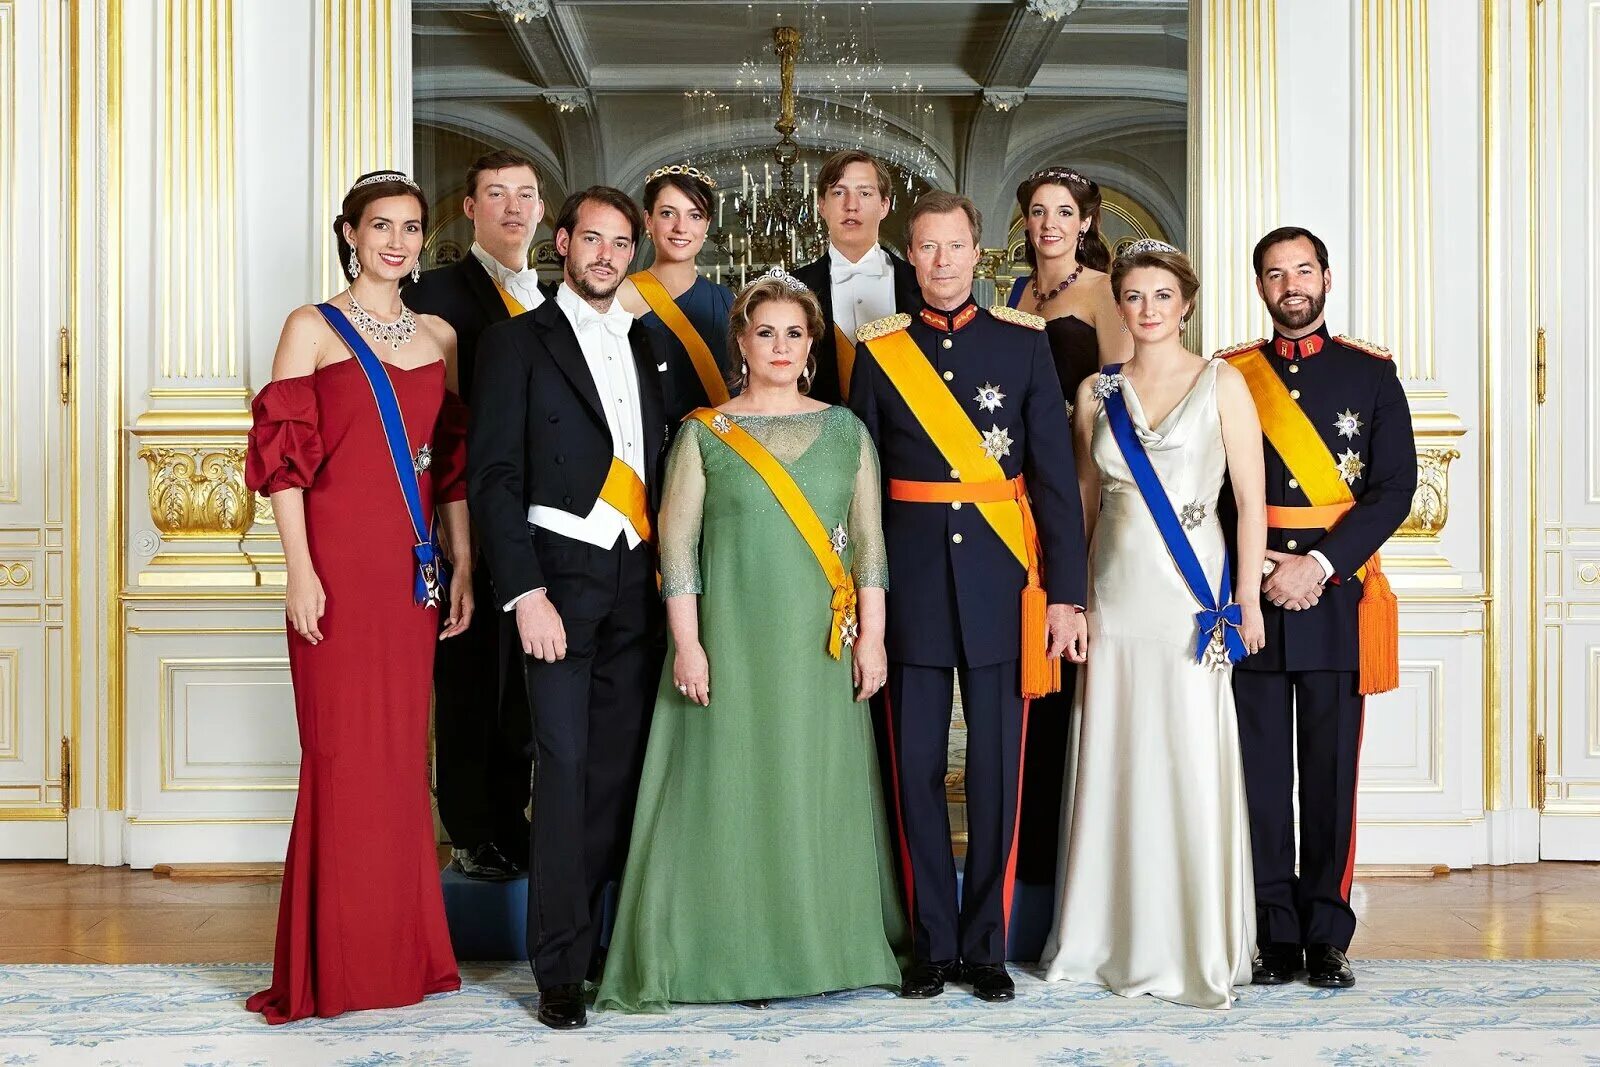 Анри (Великий герцог Люксембурга). Люксембург монаршая семья. Семья герцога Люксембурга. Люксембург герцог Анри и семья. Злодейка что пленила великого герцога 16